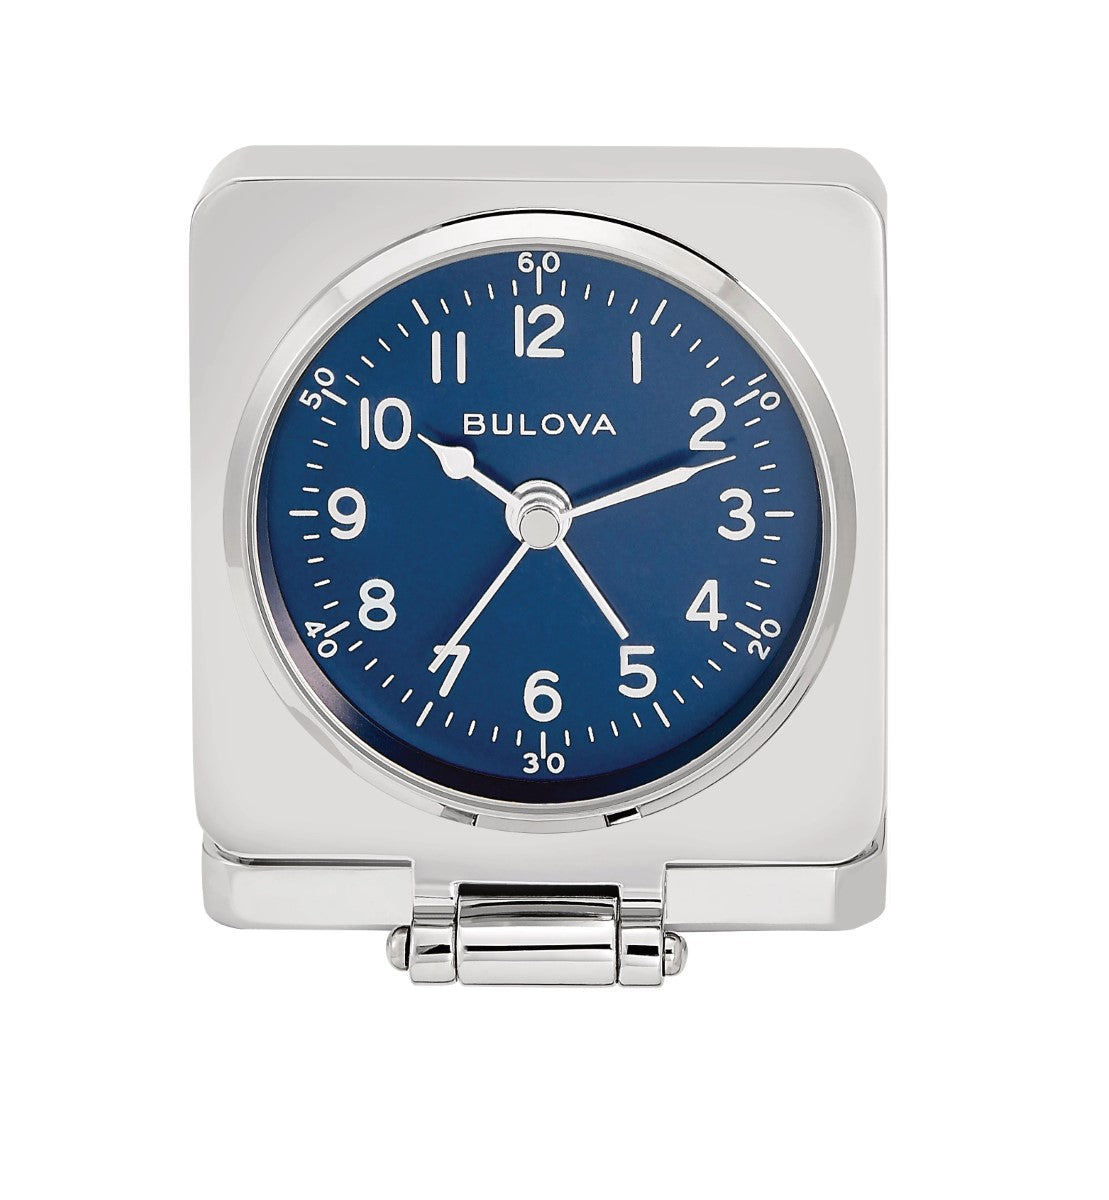 Bulova B1882 Travel Hack Flip Cover Tabletop Alarm Clock